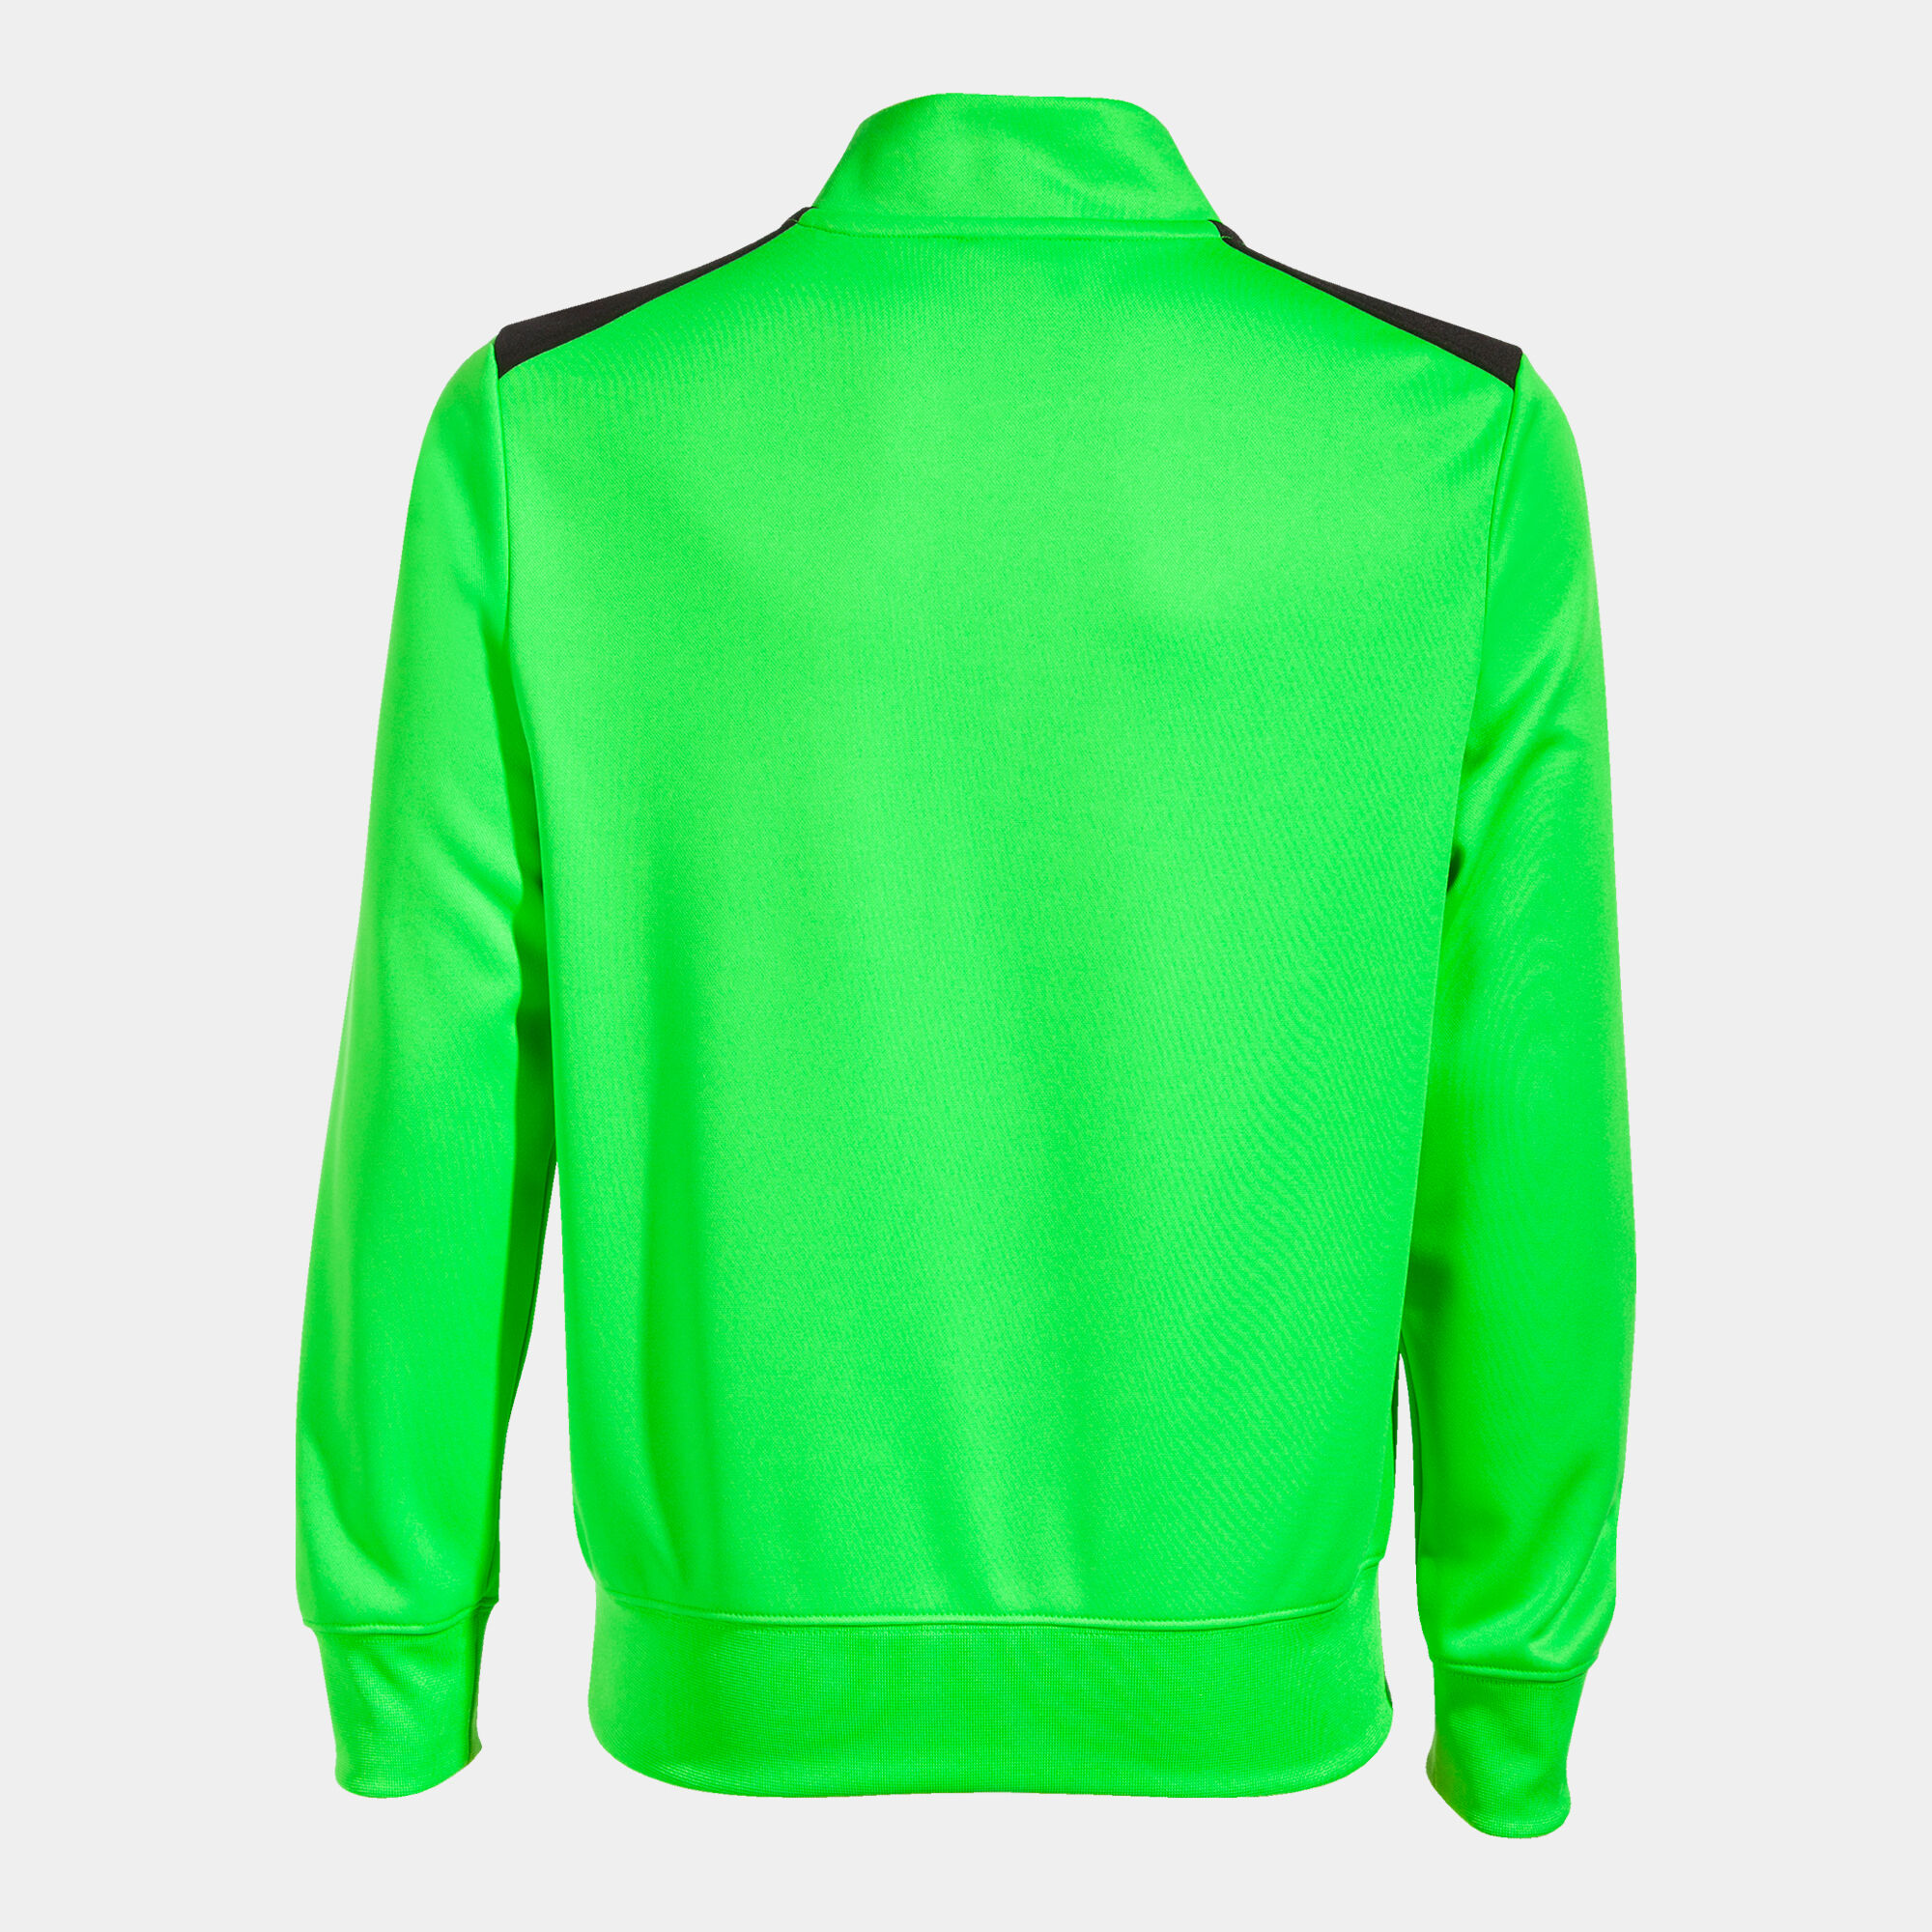 Bluza mężczyźni Championship VII fluorescencyjny zielony czarny